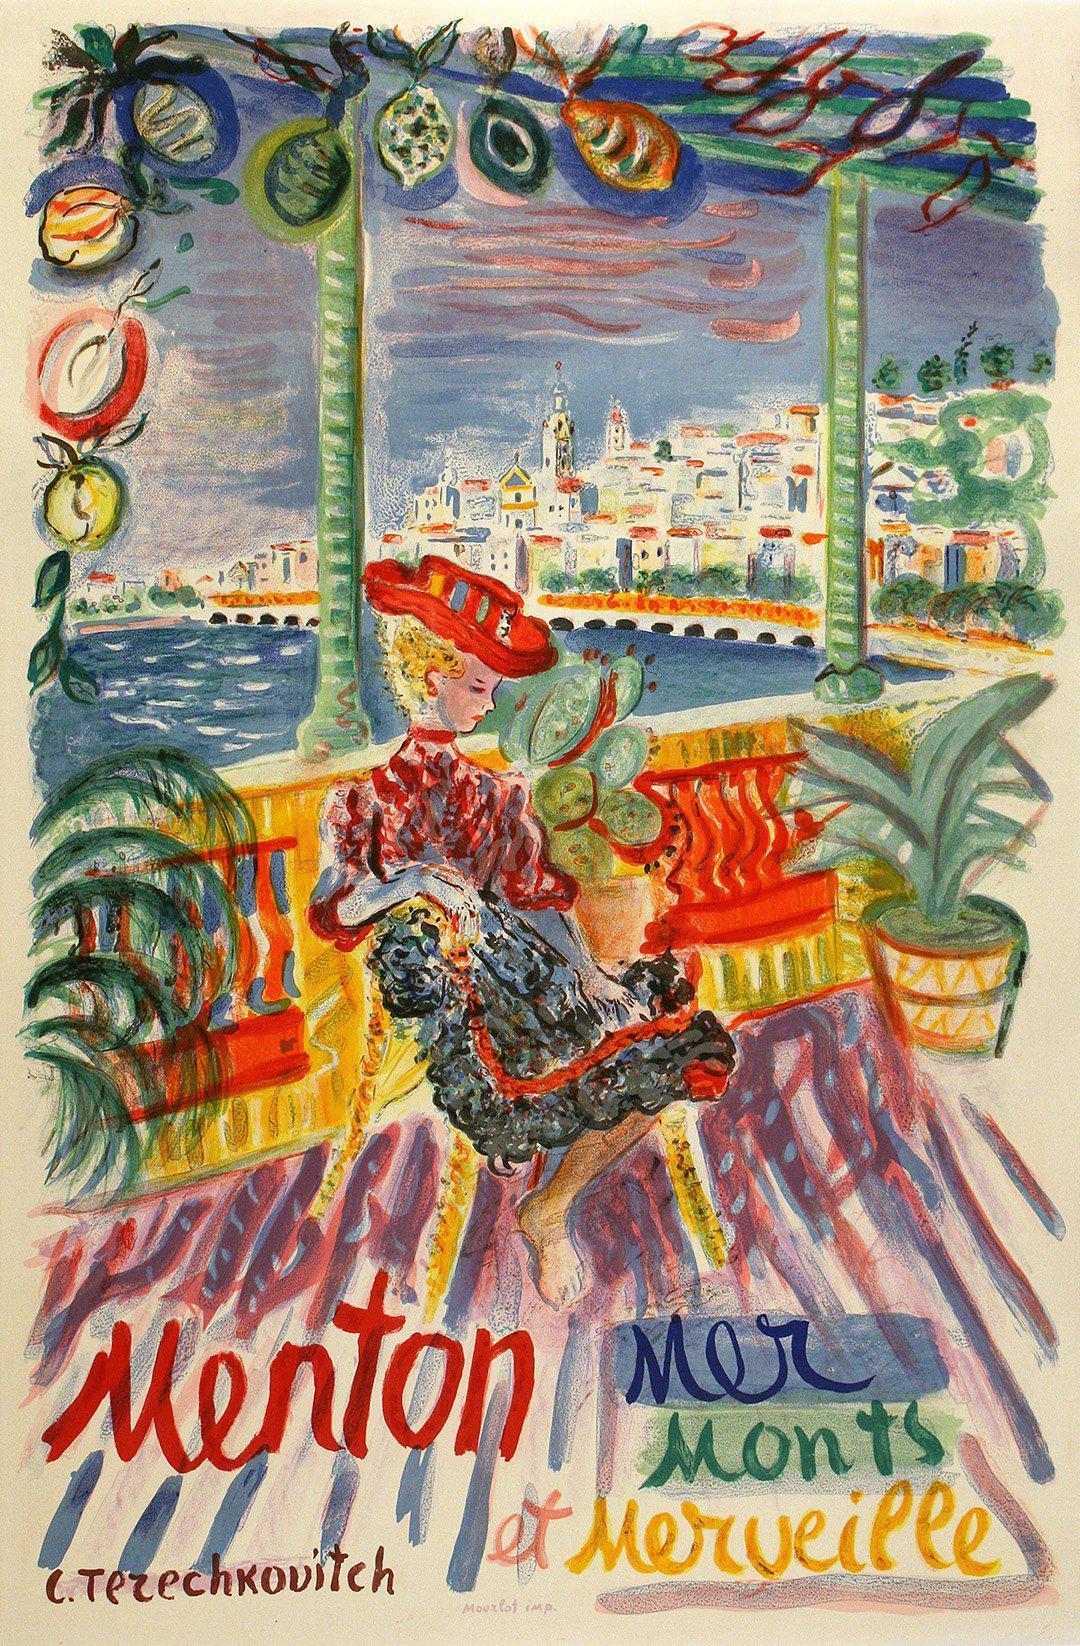 Original Vintage French Travel Poster Menton - Mer, Monts, et Merveille by Constantin Terechkovitch c1960 Cote d'Azur